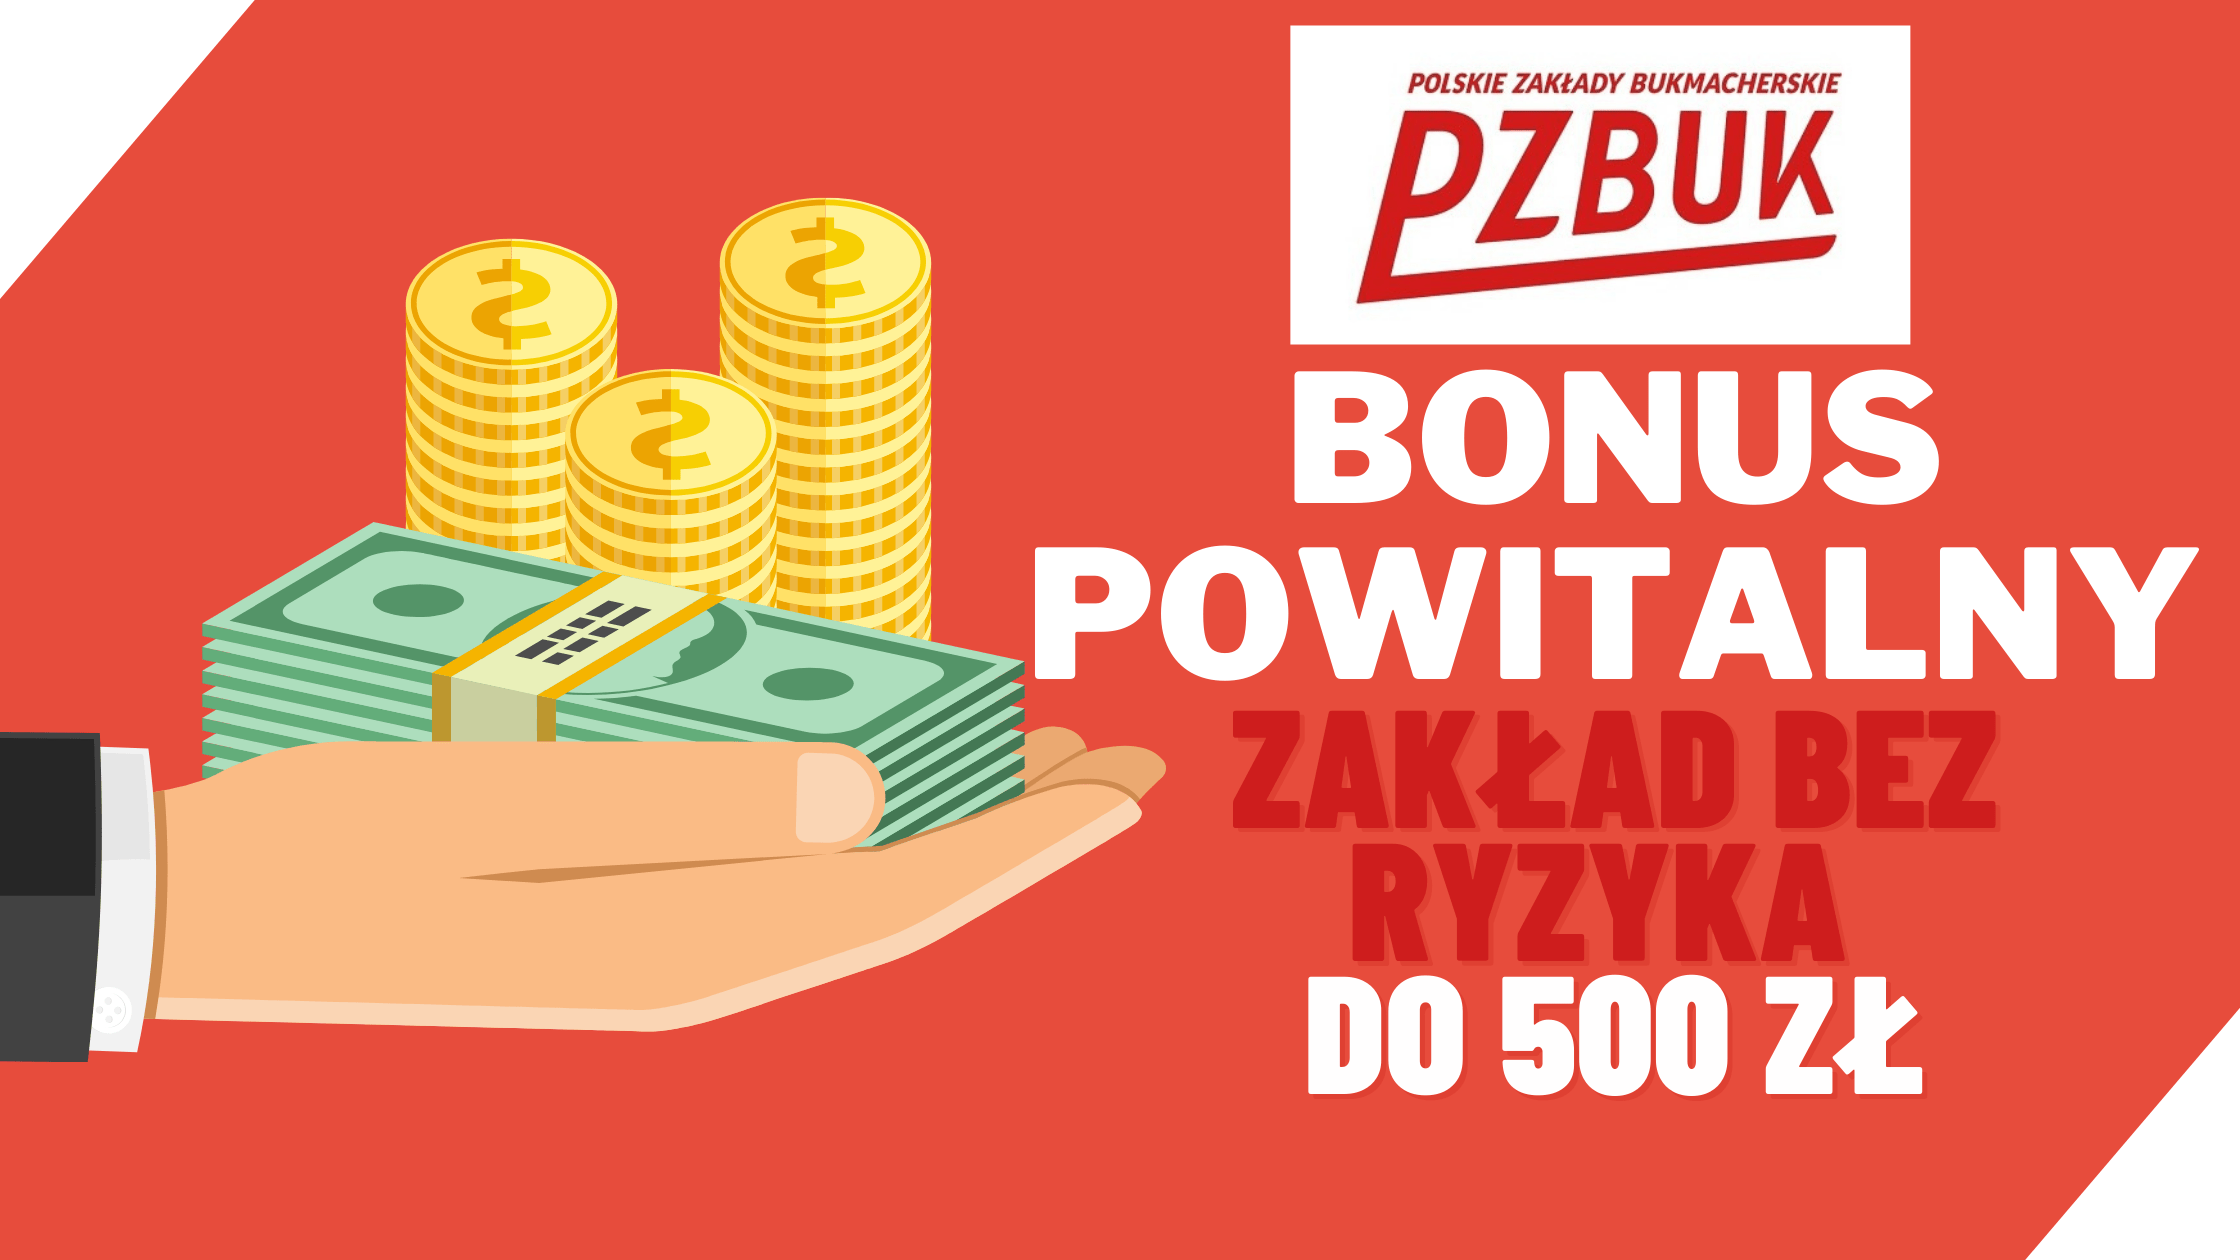 Zakłady bukmacherskie PZBuk bonus powitalny - zakłady bez ryzyka do 500 zł